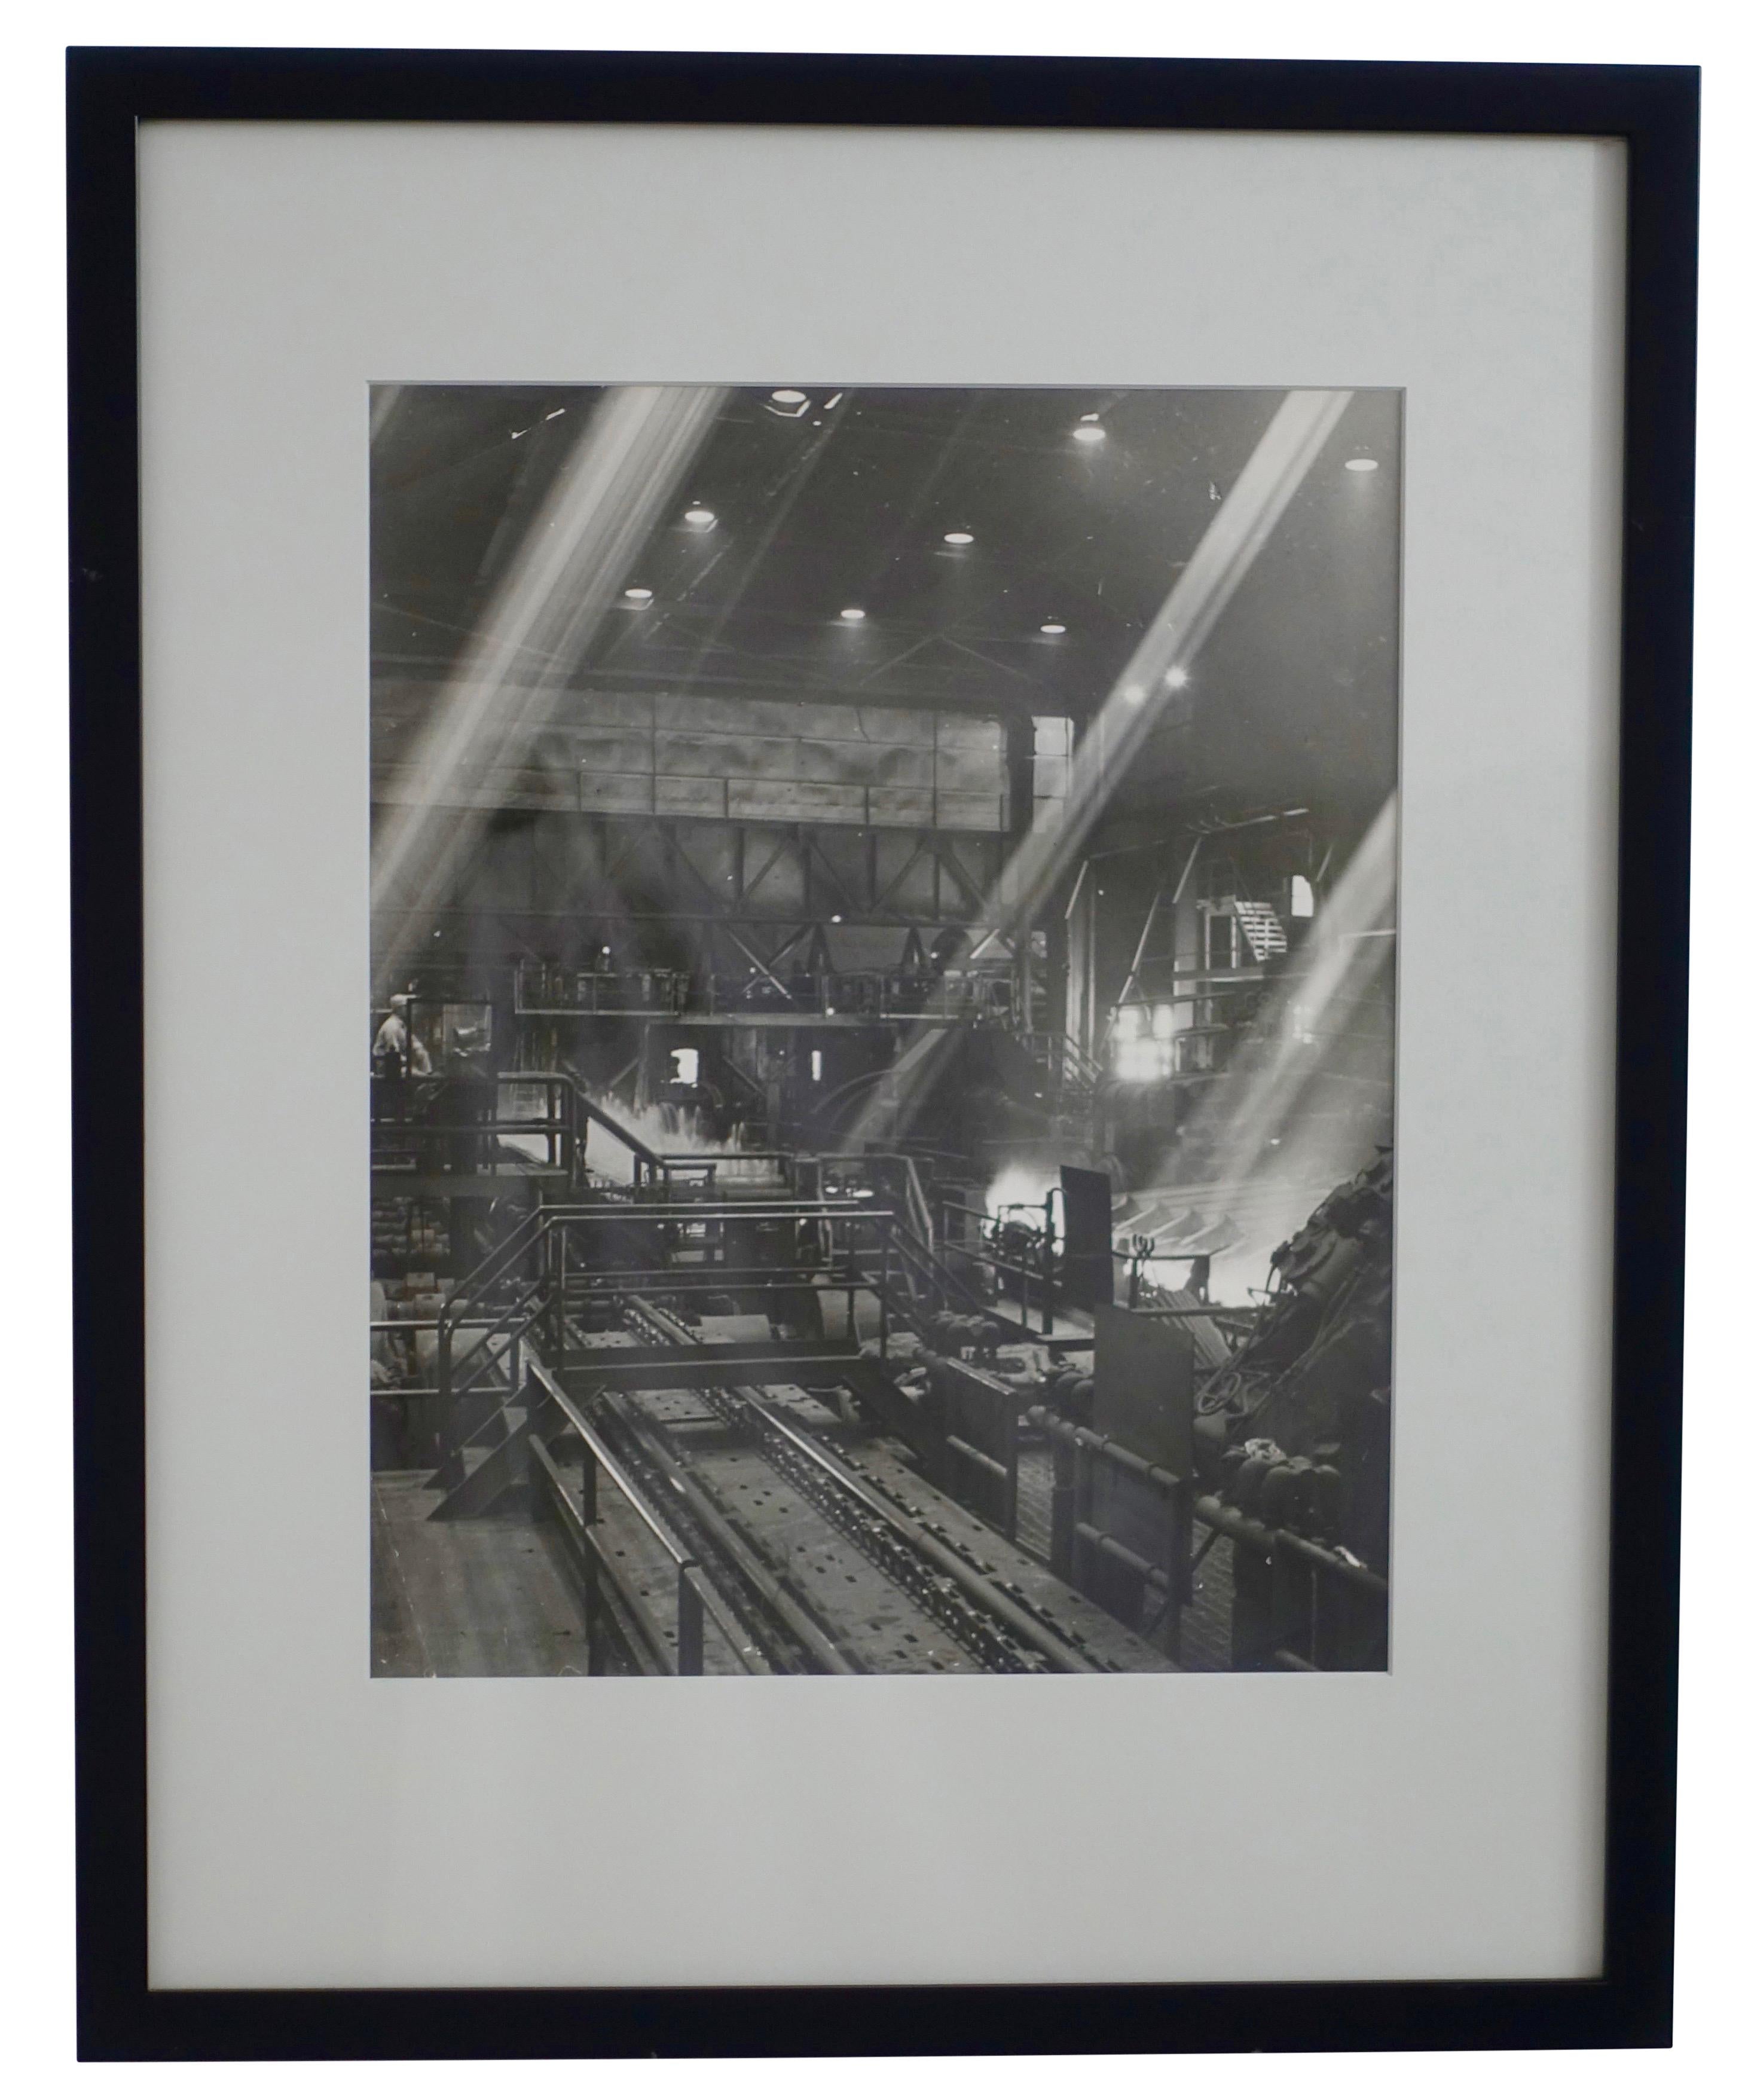 Einzigartige, nie veröffentlichte Schwarz-Weiß-Fotografie einer industriellen Stahlwerkszene, unsigniert. Professionell mattiert und gerahmt, amerikanisch, Anfang bis Mitte des 20. Jahrhunderts.